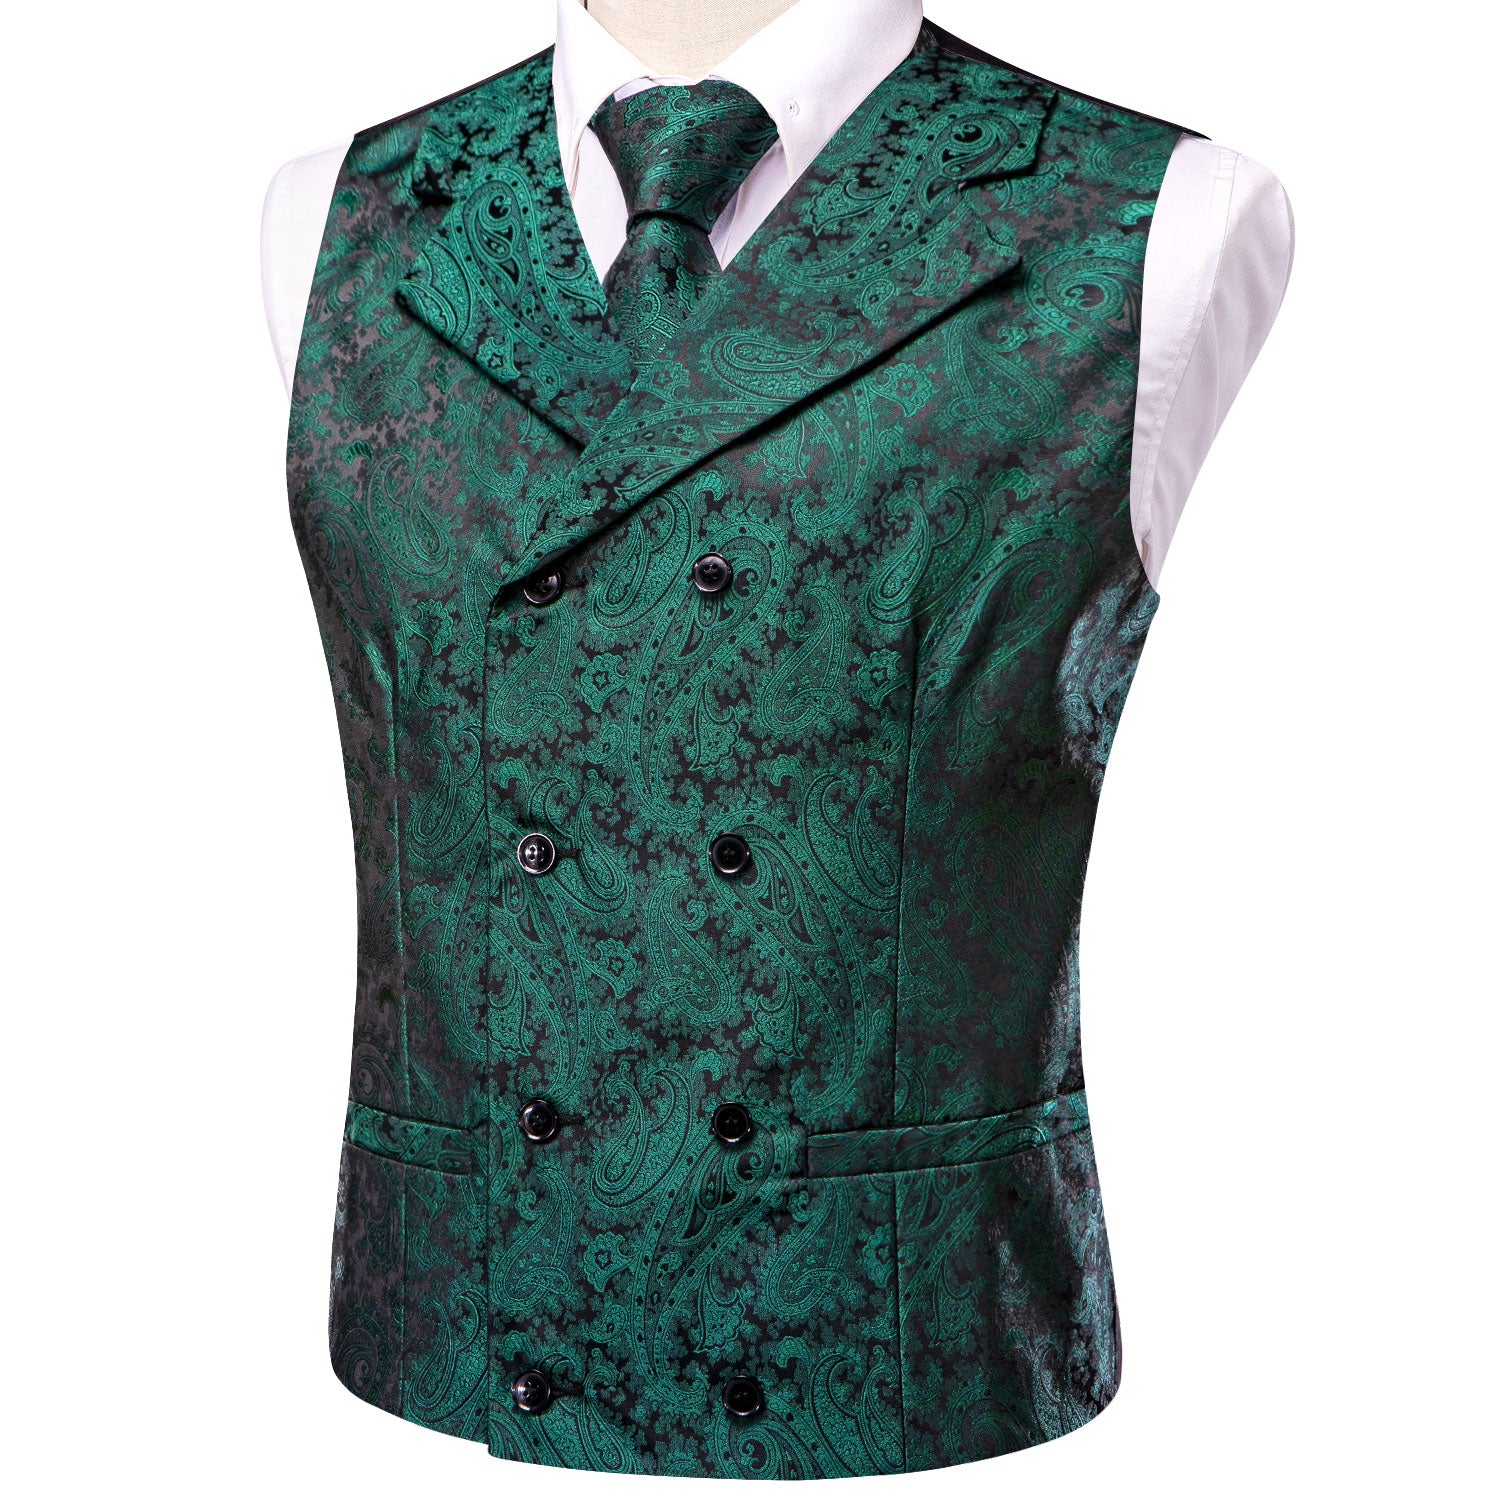 Pine Green Paisley Men's Collar Vest Hanky Cufflinks Tie Set